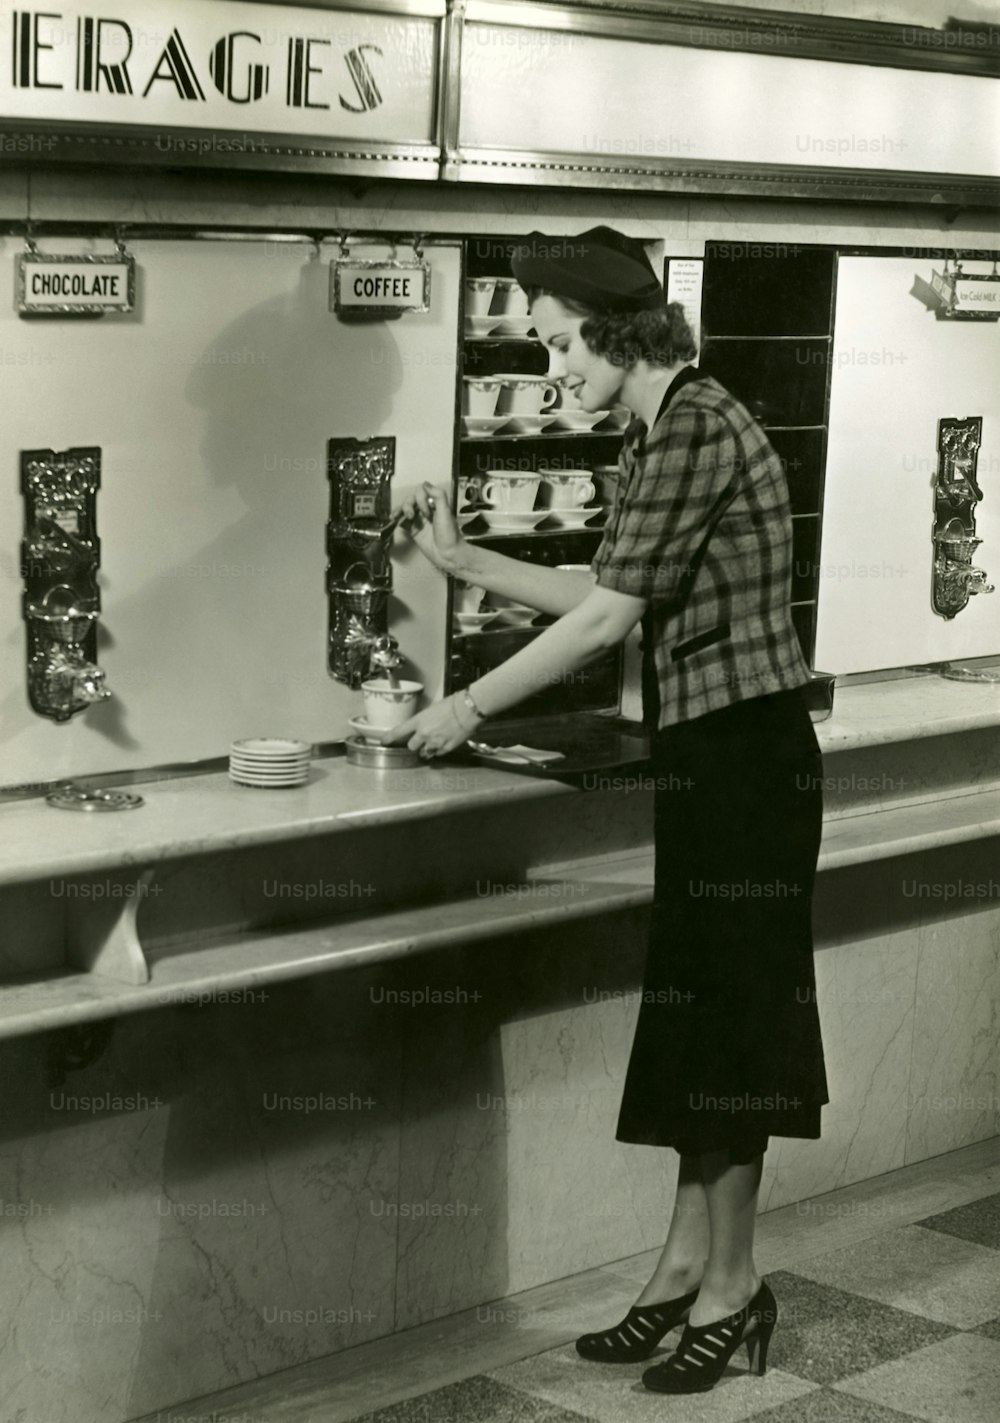 ESTADOS UNIDOS - CIRCA 1950s: Mujer tomando café.